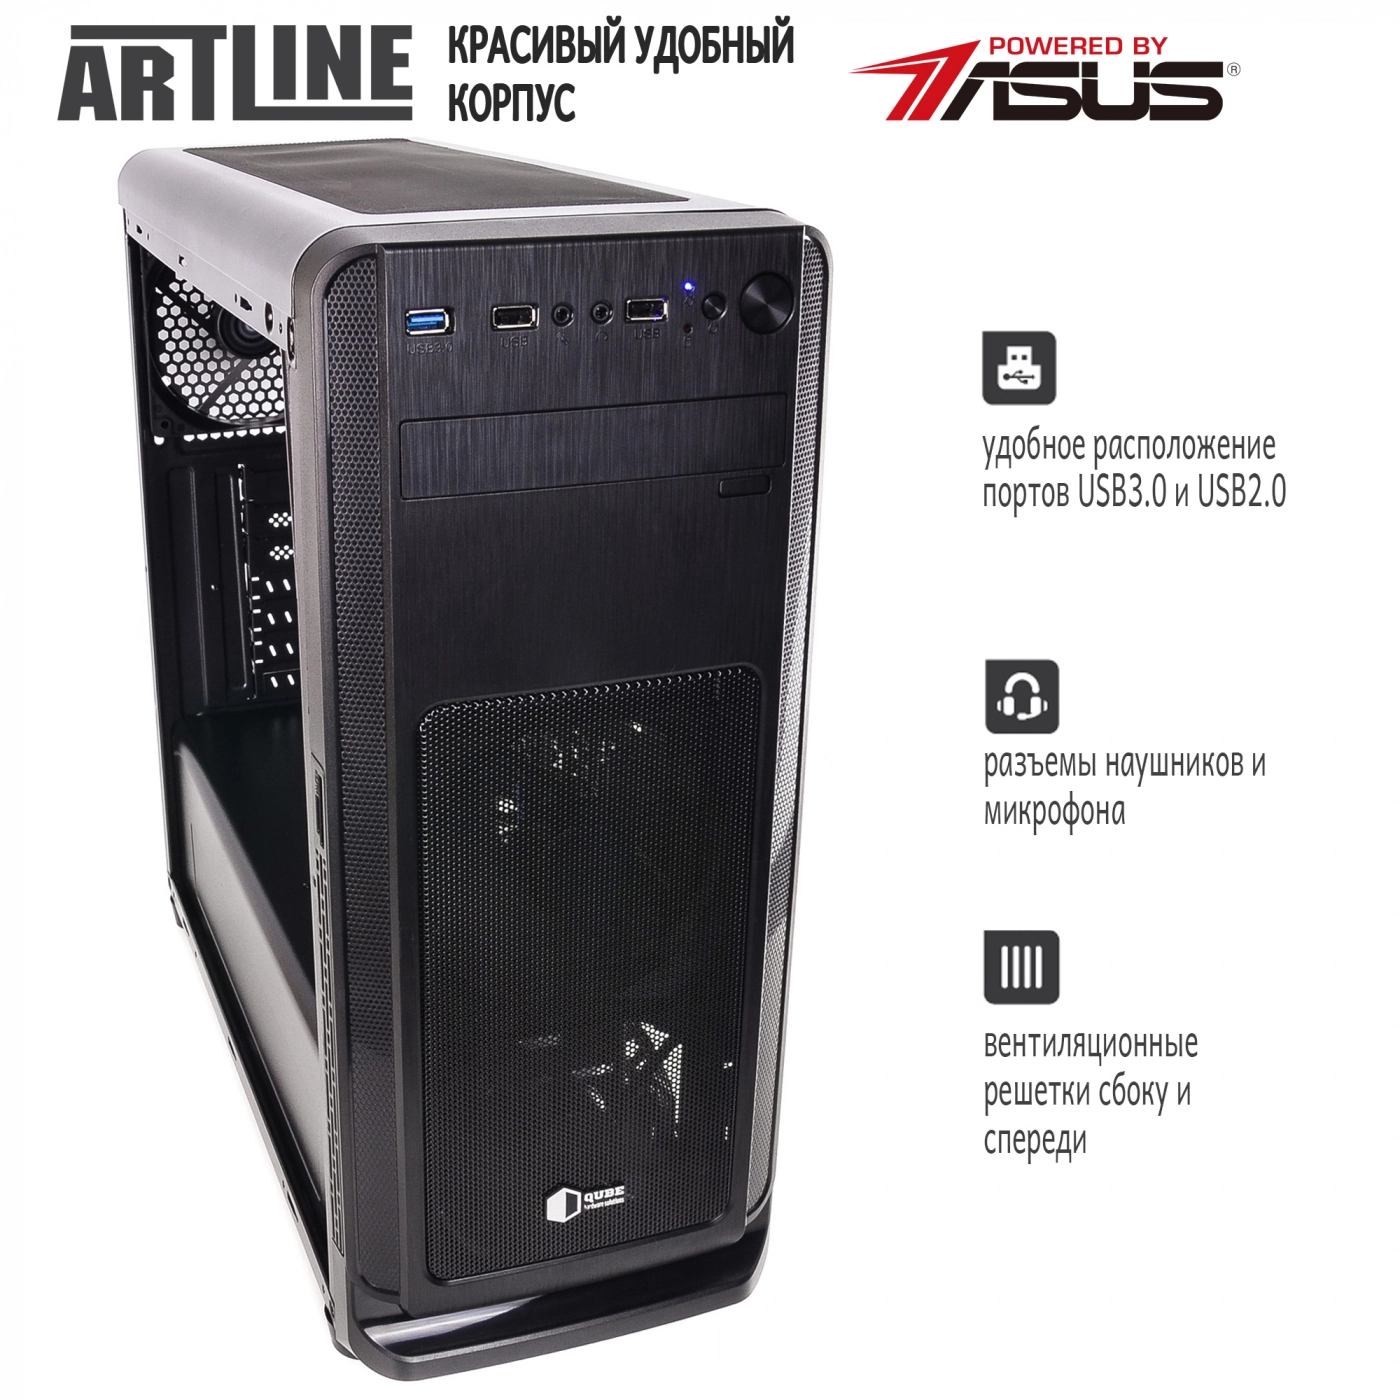 Купить Сервер ARTLINE Business T19v14 - фото 4